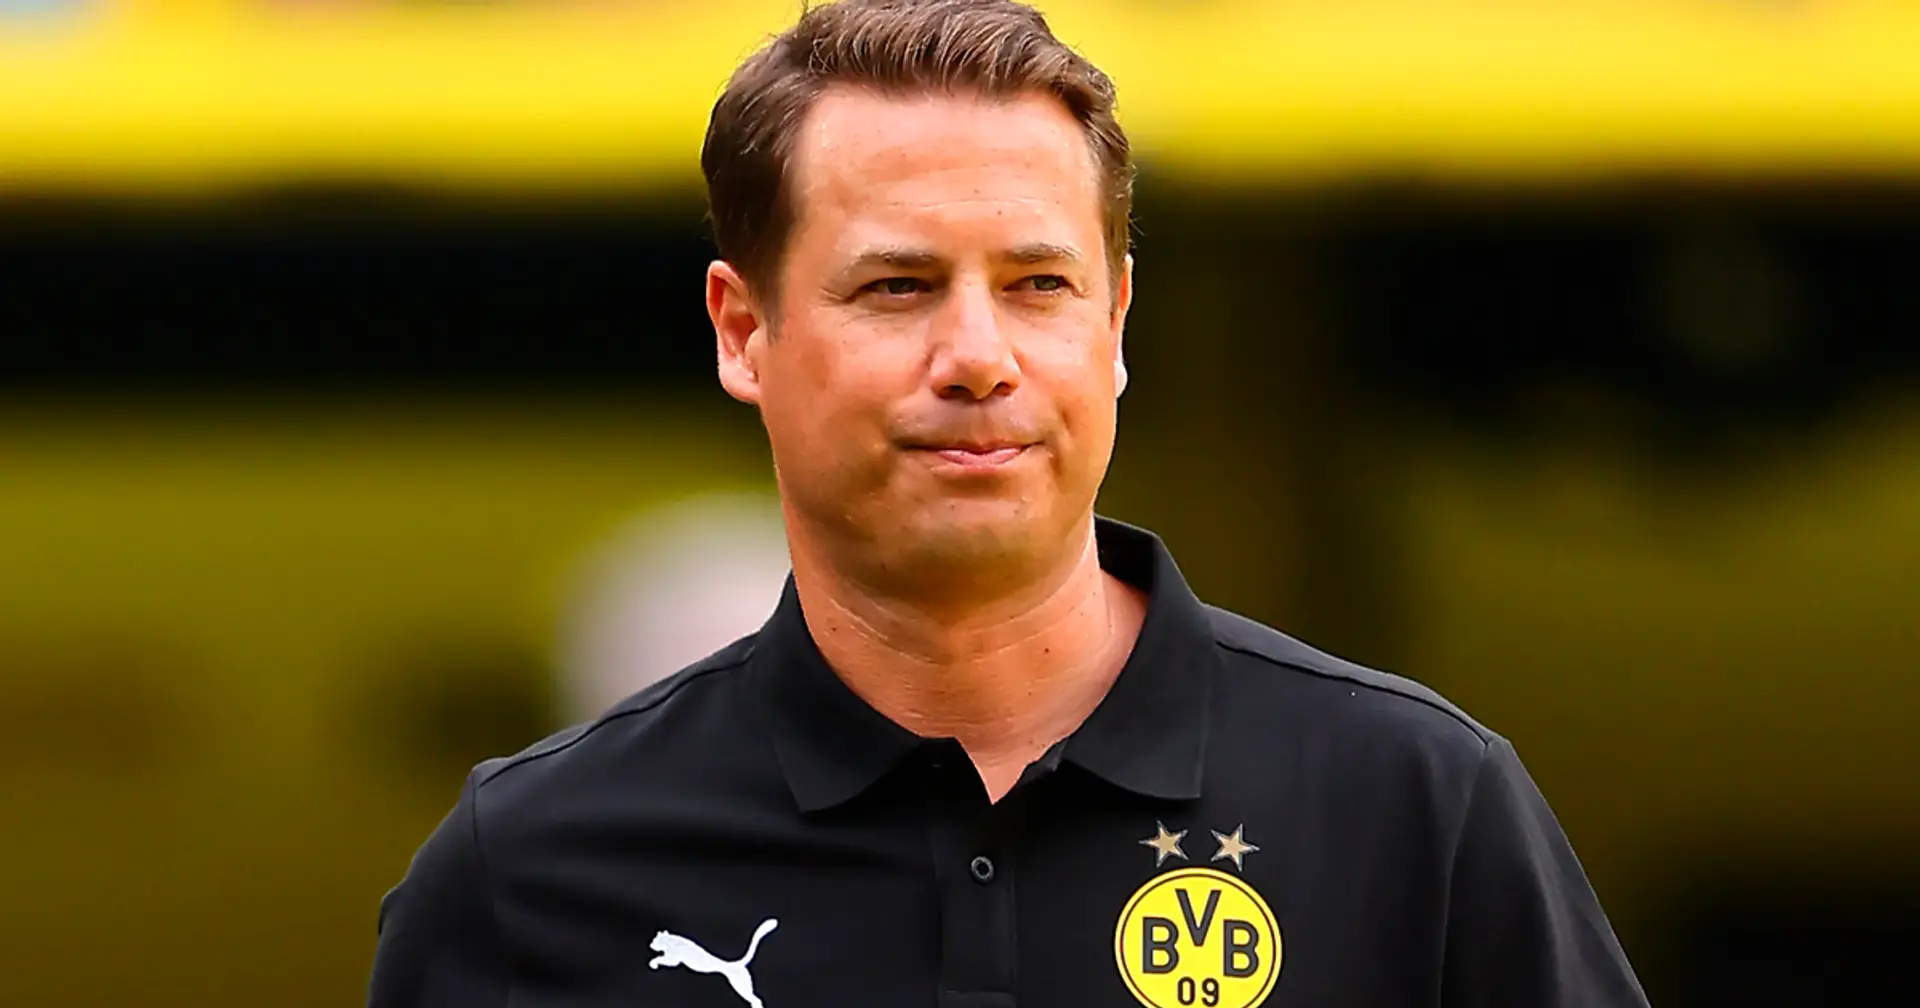 Der beliebteste BVB-Mitarbeiter: Das steckt hinter der Ernennung von Lars Ricken zum Sportvorstand